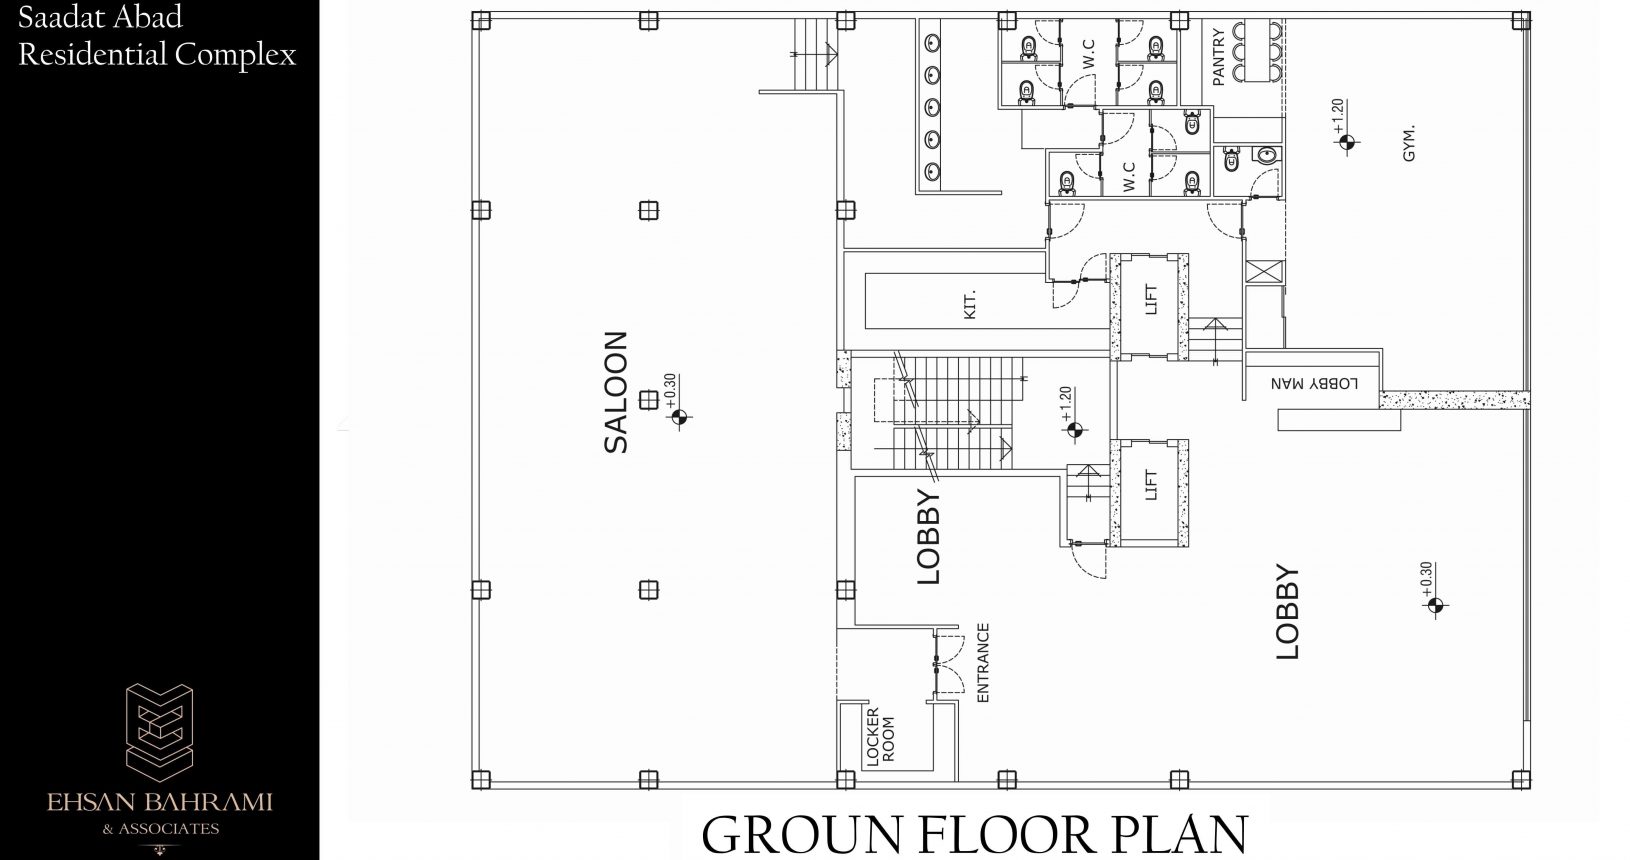 Saadat Abad 13 Residential Building Ground Floor Plan